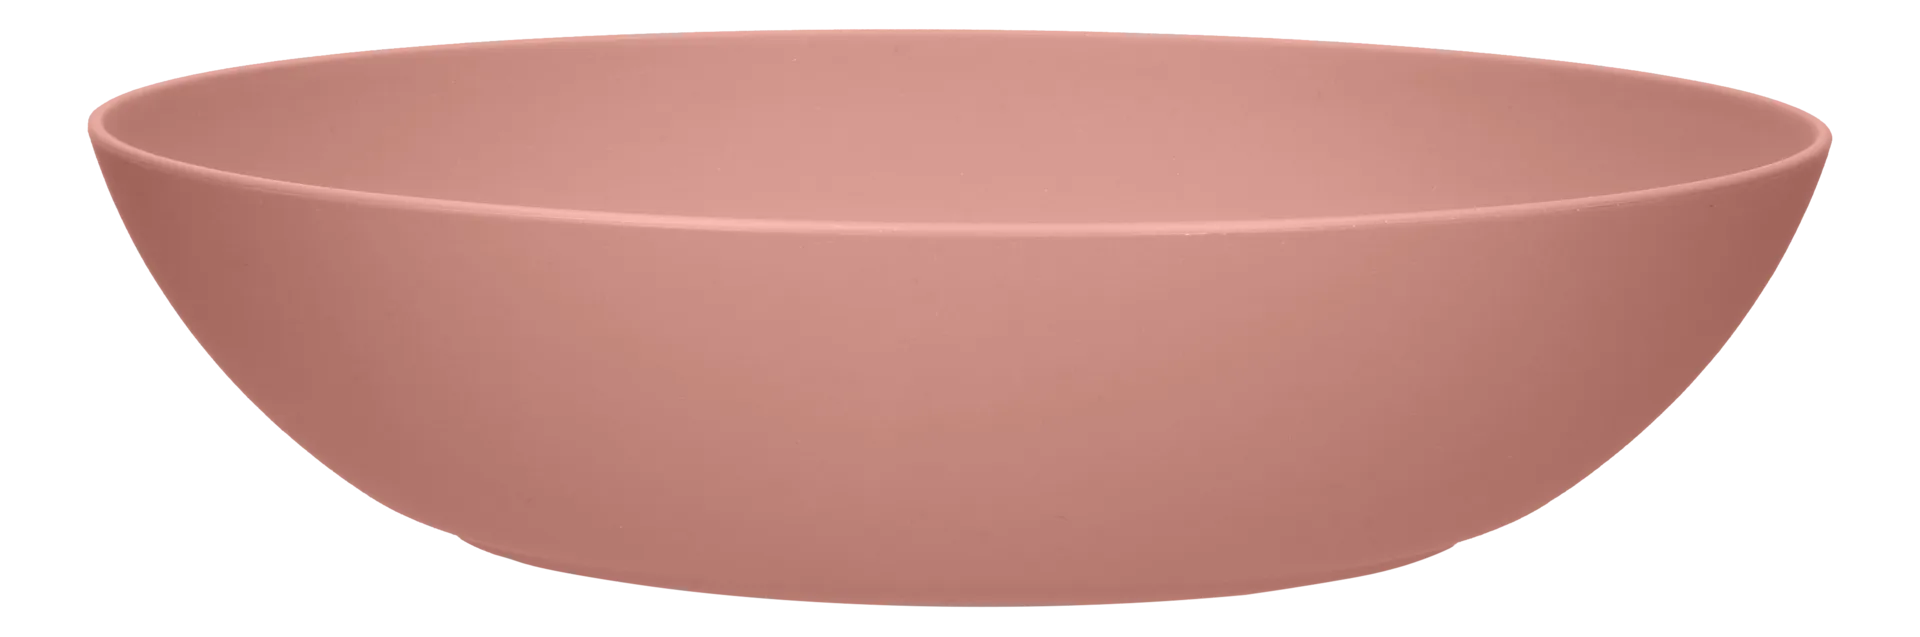 House syvä lautanen Nelma 20 cm roosa